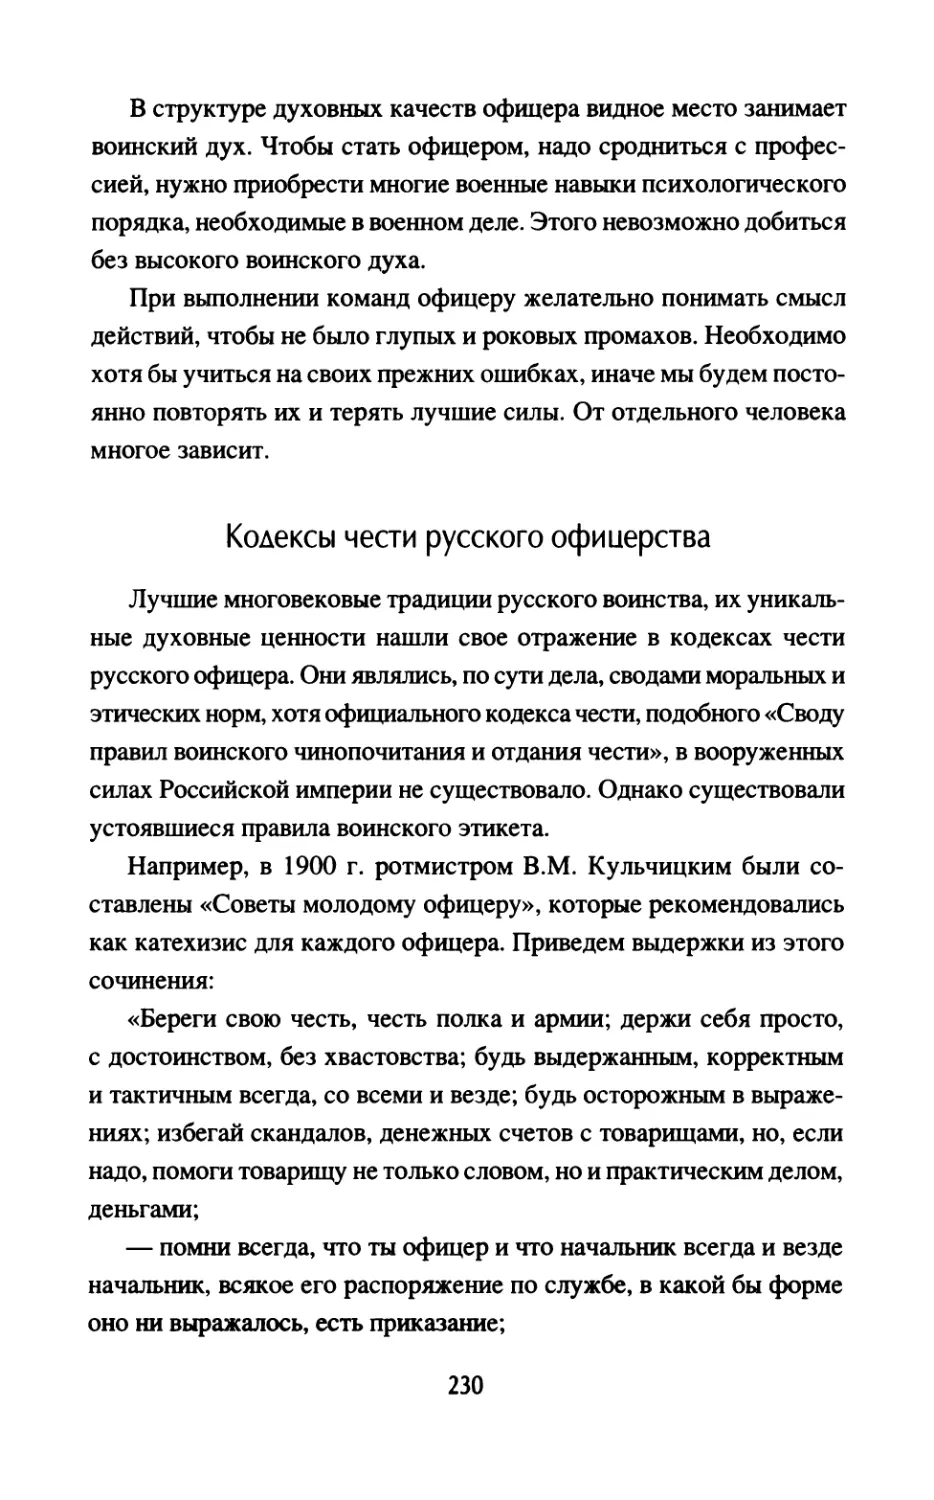 Кодексы чести русского офицерства